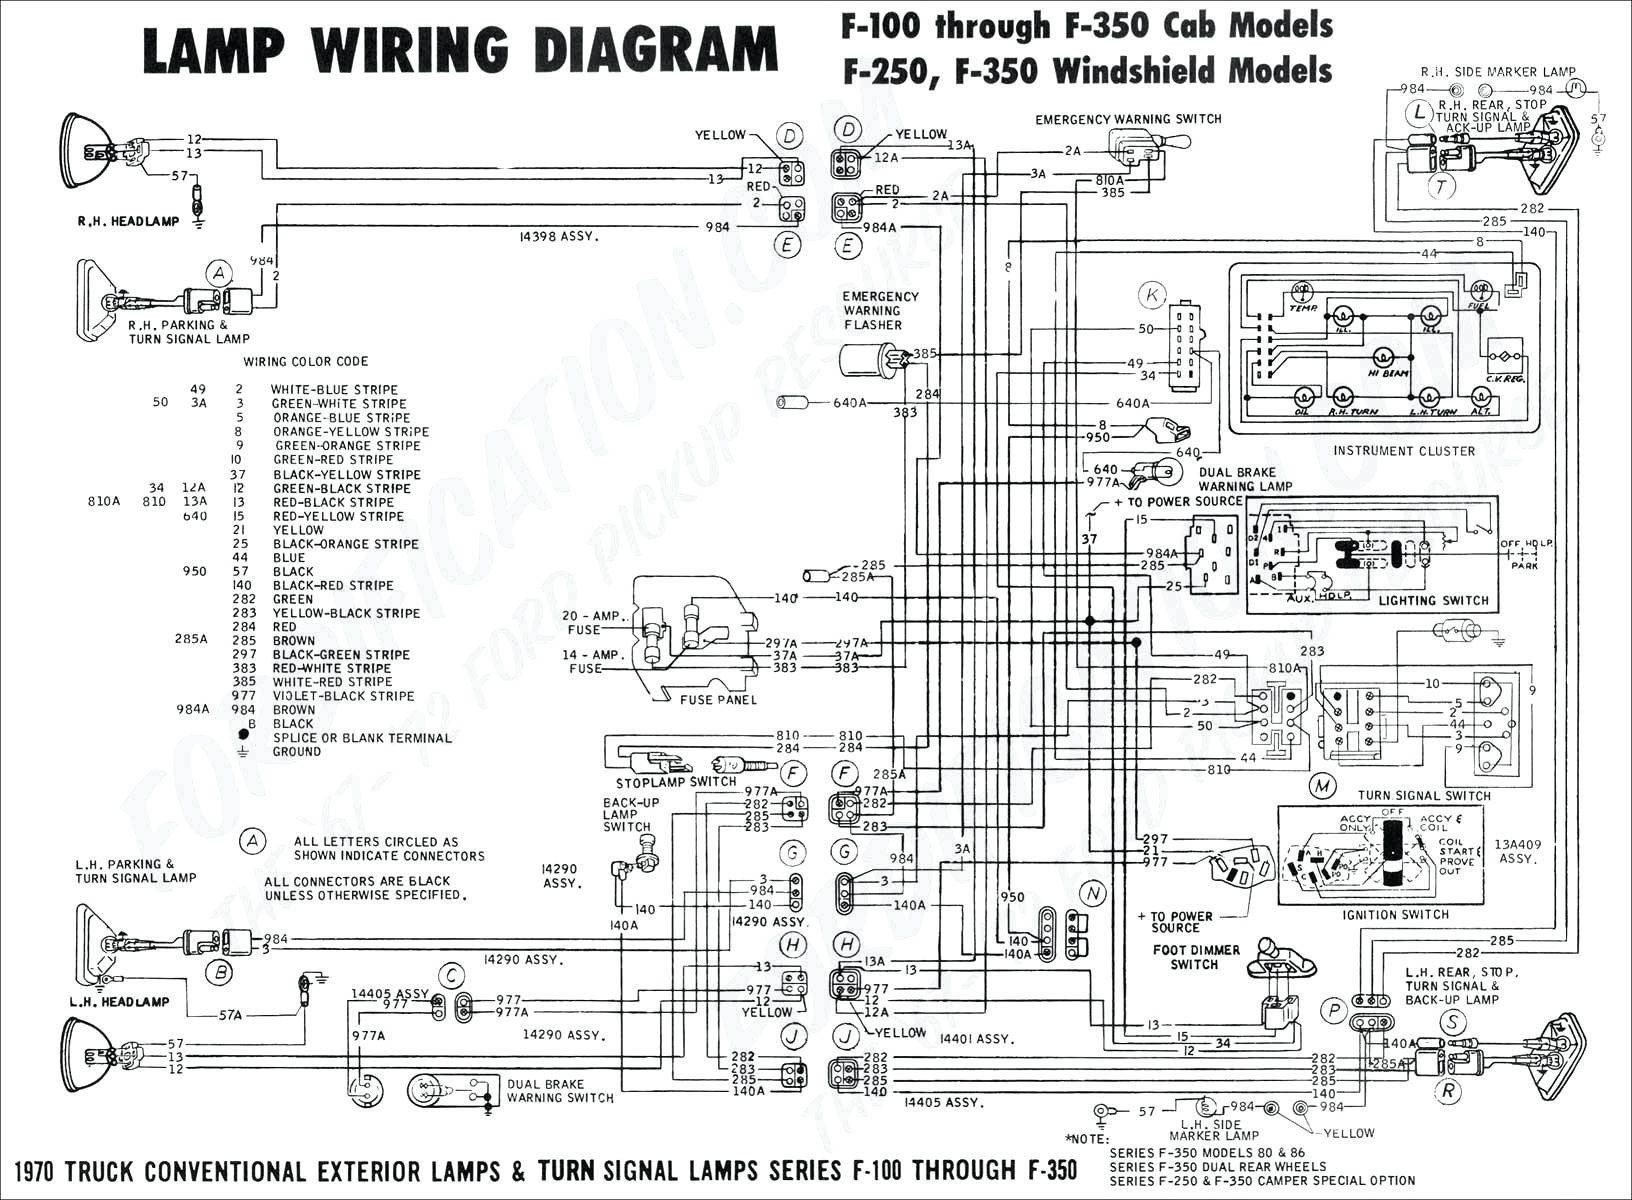 Dodge Truck Parts Diagram Dodge Ram 1500 Exhaust Diagram Auto Parts Diagrams Wiring Diagram Week Of Dodge Truck Parts Diagram